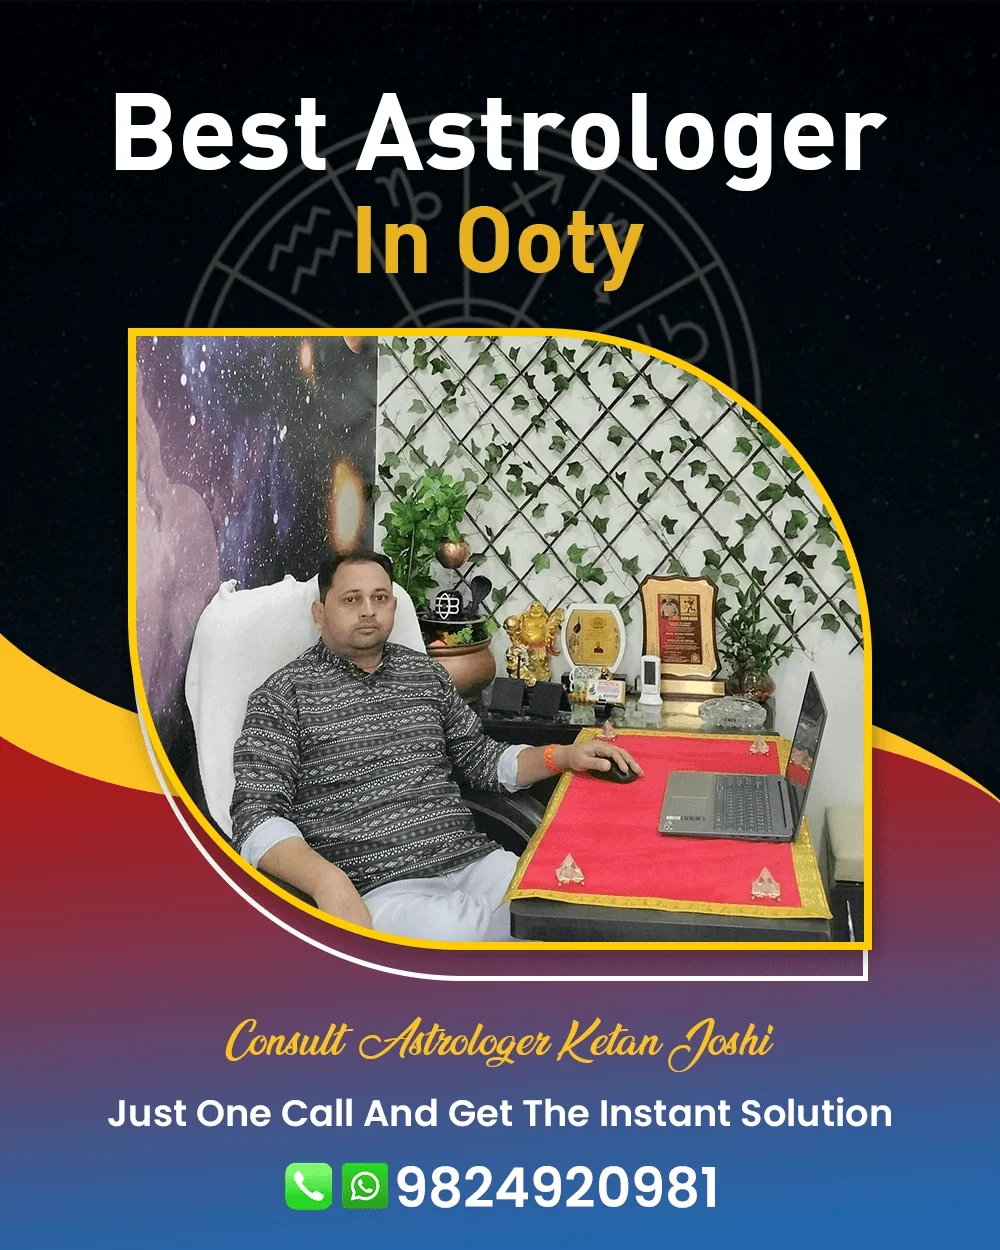 Best Astrologer In Ooty